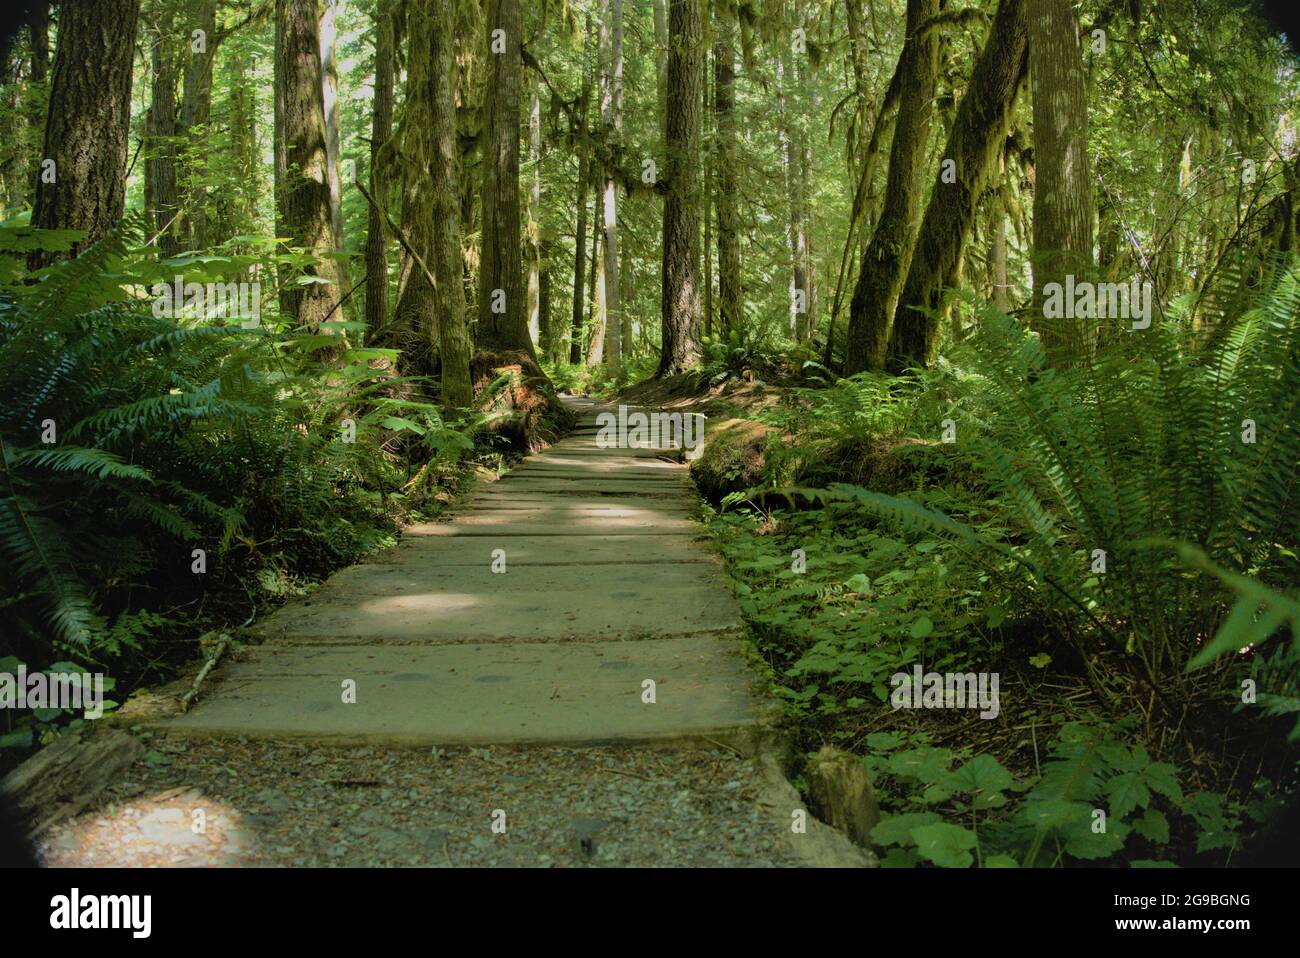 Una passeggiata nei boschi del Pacifico nord-occidentale. Il PNW è un posto incredibile con sentieri come questo che possono andare avanti per chilometri. Scopri lo stato di Washington! Foto Stock